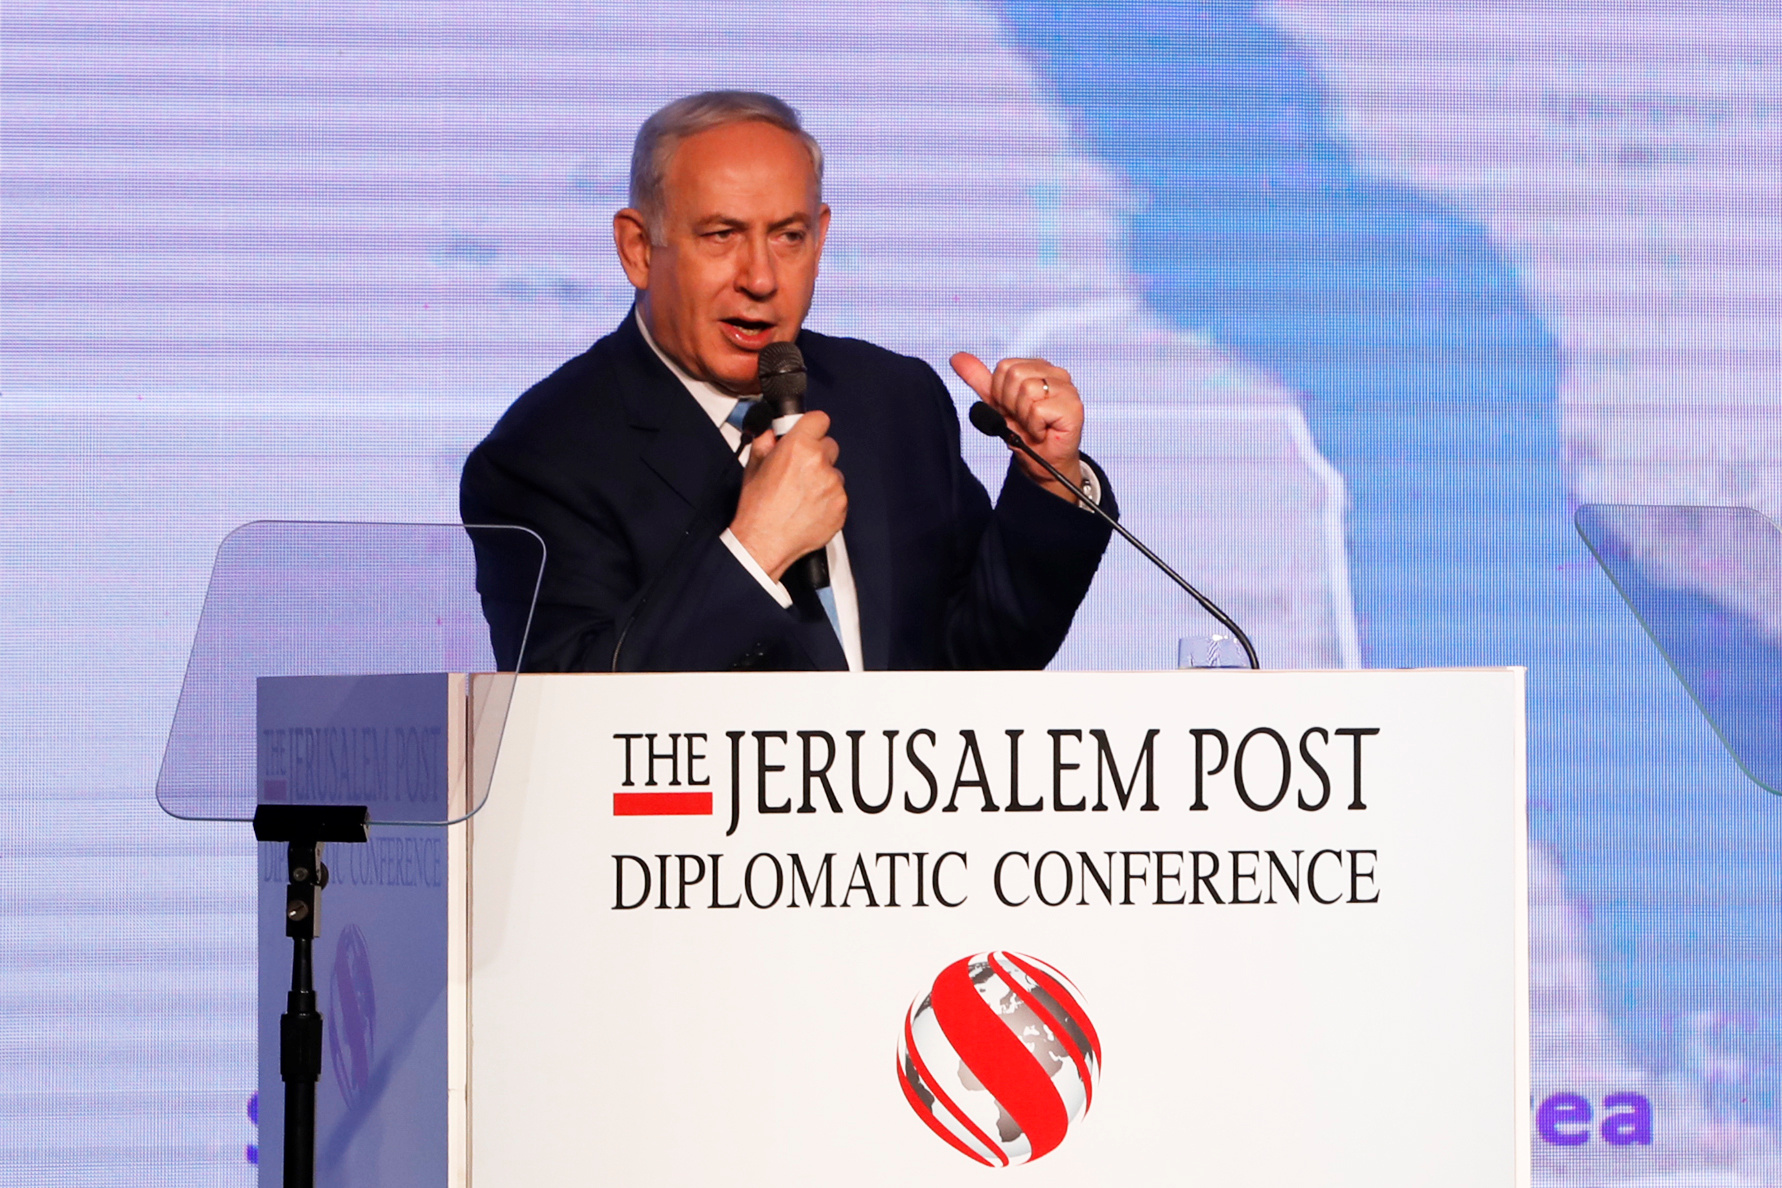 رئيس الوزراء الاسرائيلي بنيامين نتانياهو فى مؤتمر جيروزاليم بوست